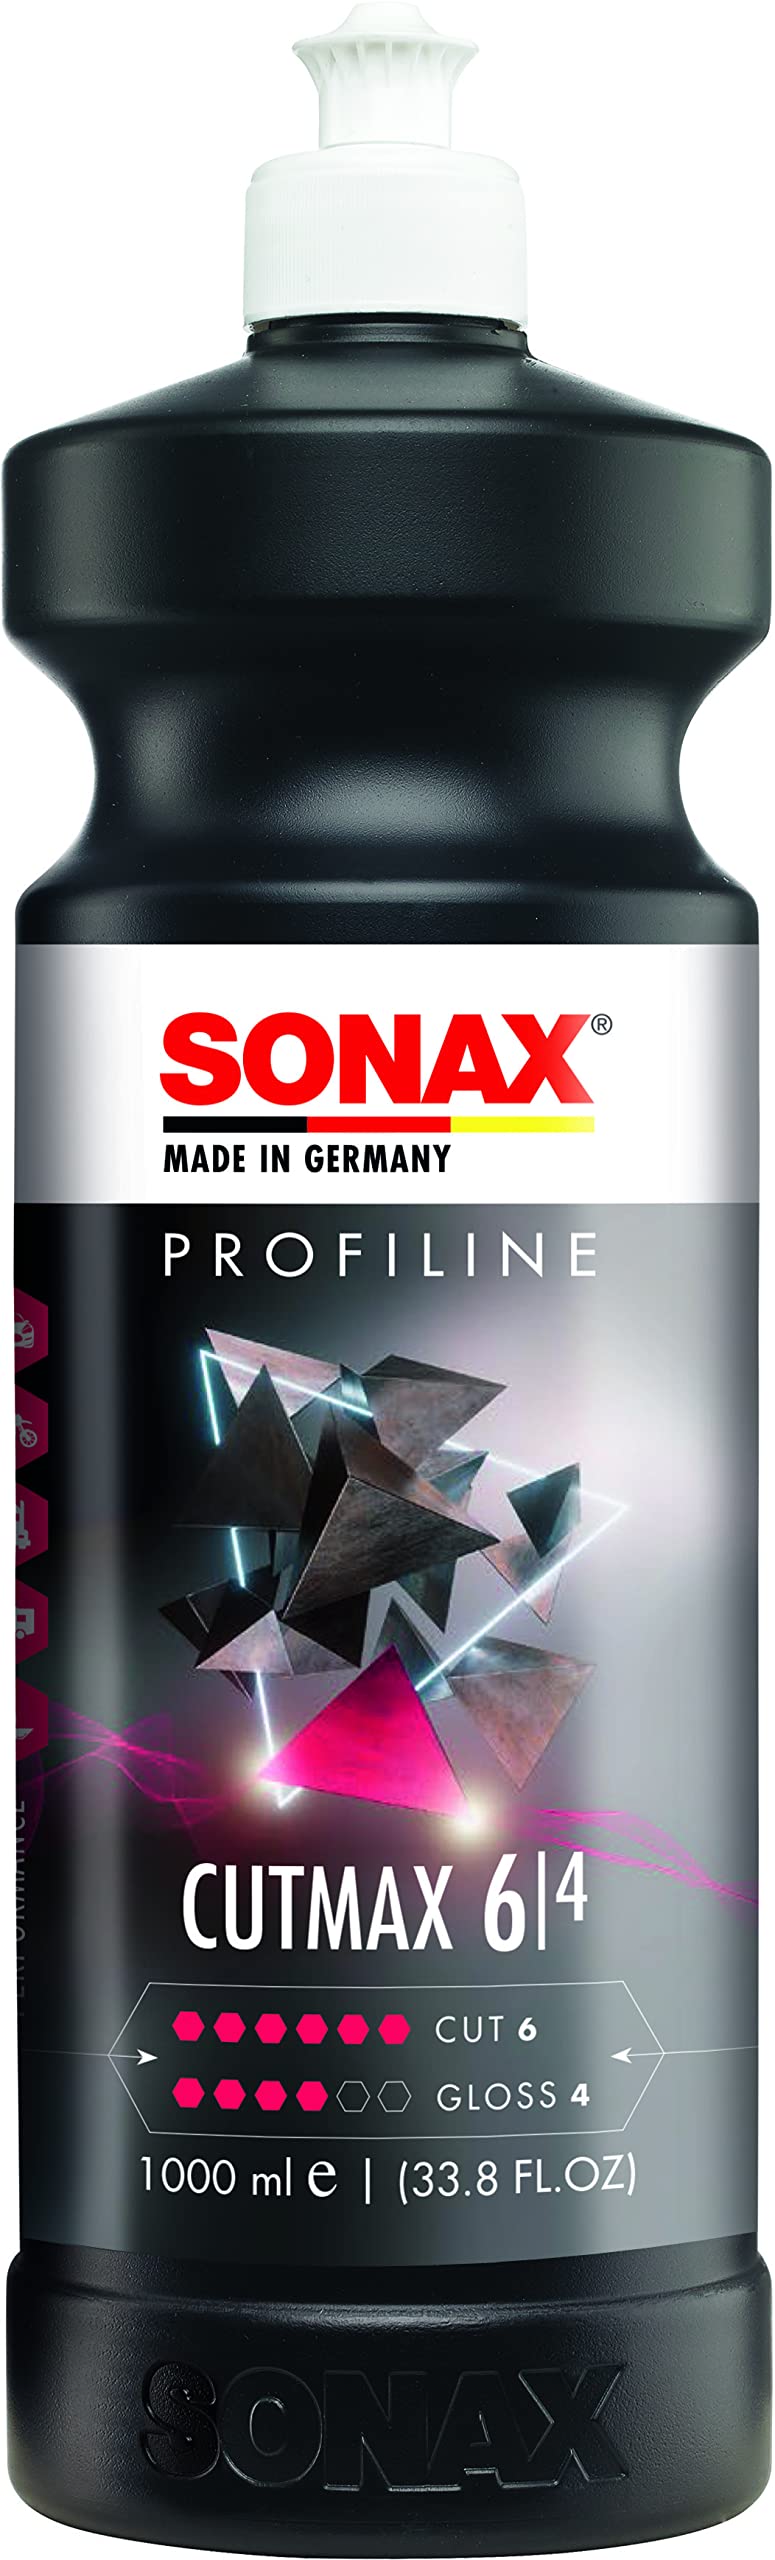 SONAX PROFILINE CutMax (1 Liter) hoch effektive Schleifpolitur für den Lackfinishbereich | Art-Nr. 02463000